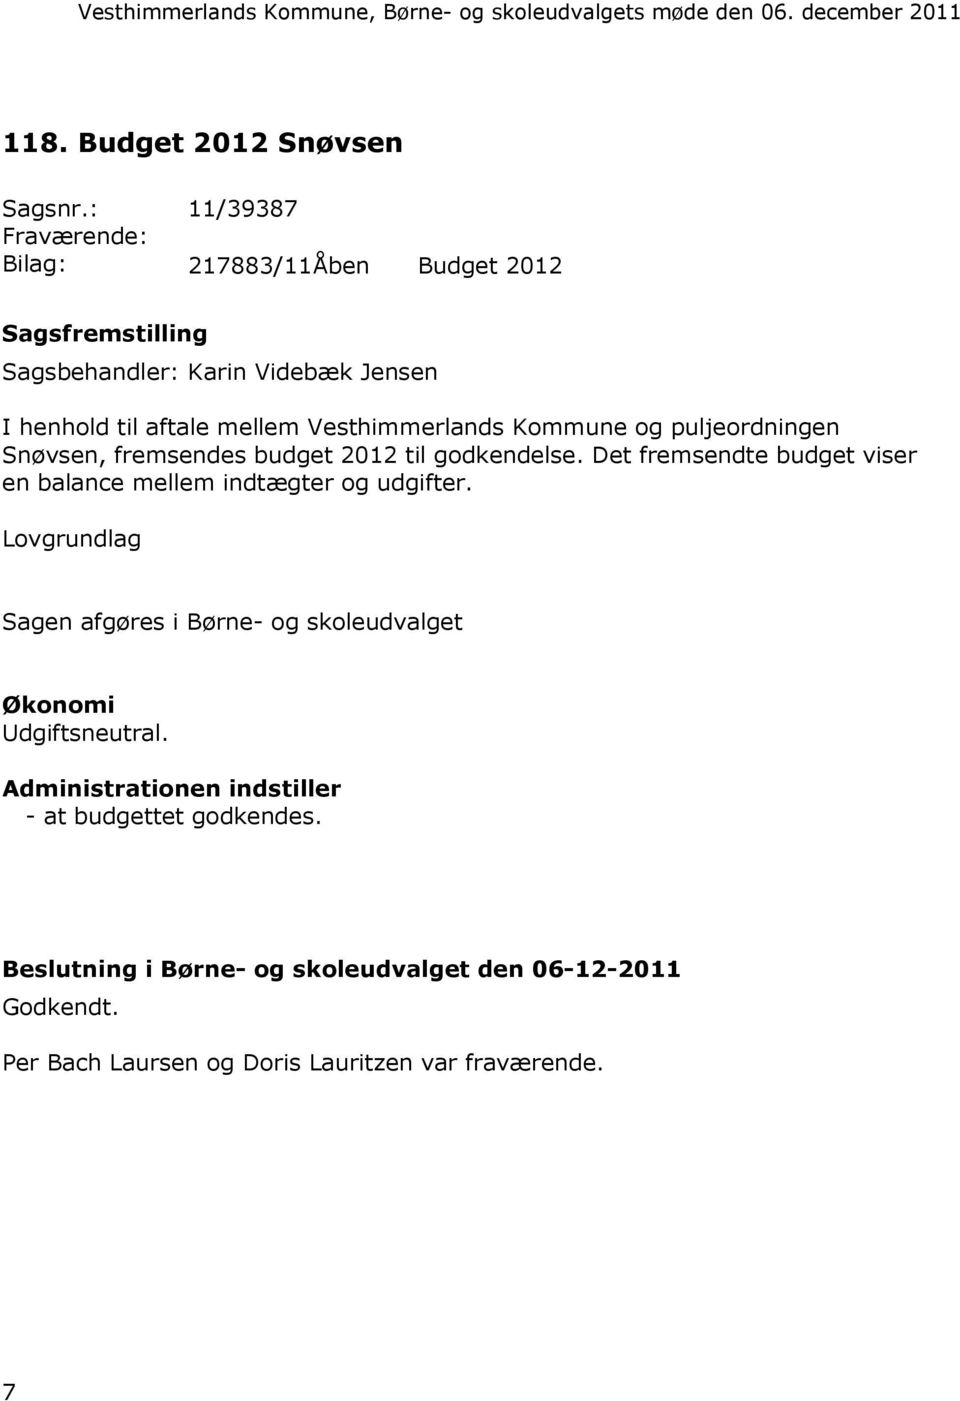 Vesthimmerlands Kommune og puljeordningen Snøvsen, fremsendes budget 2012 til godkendelse.